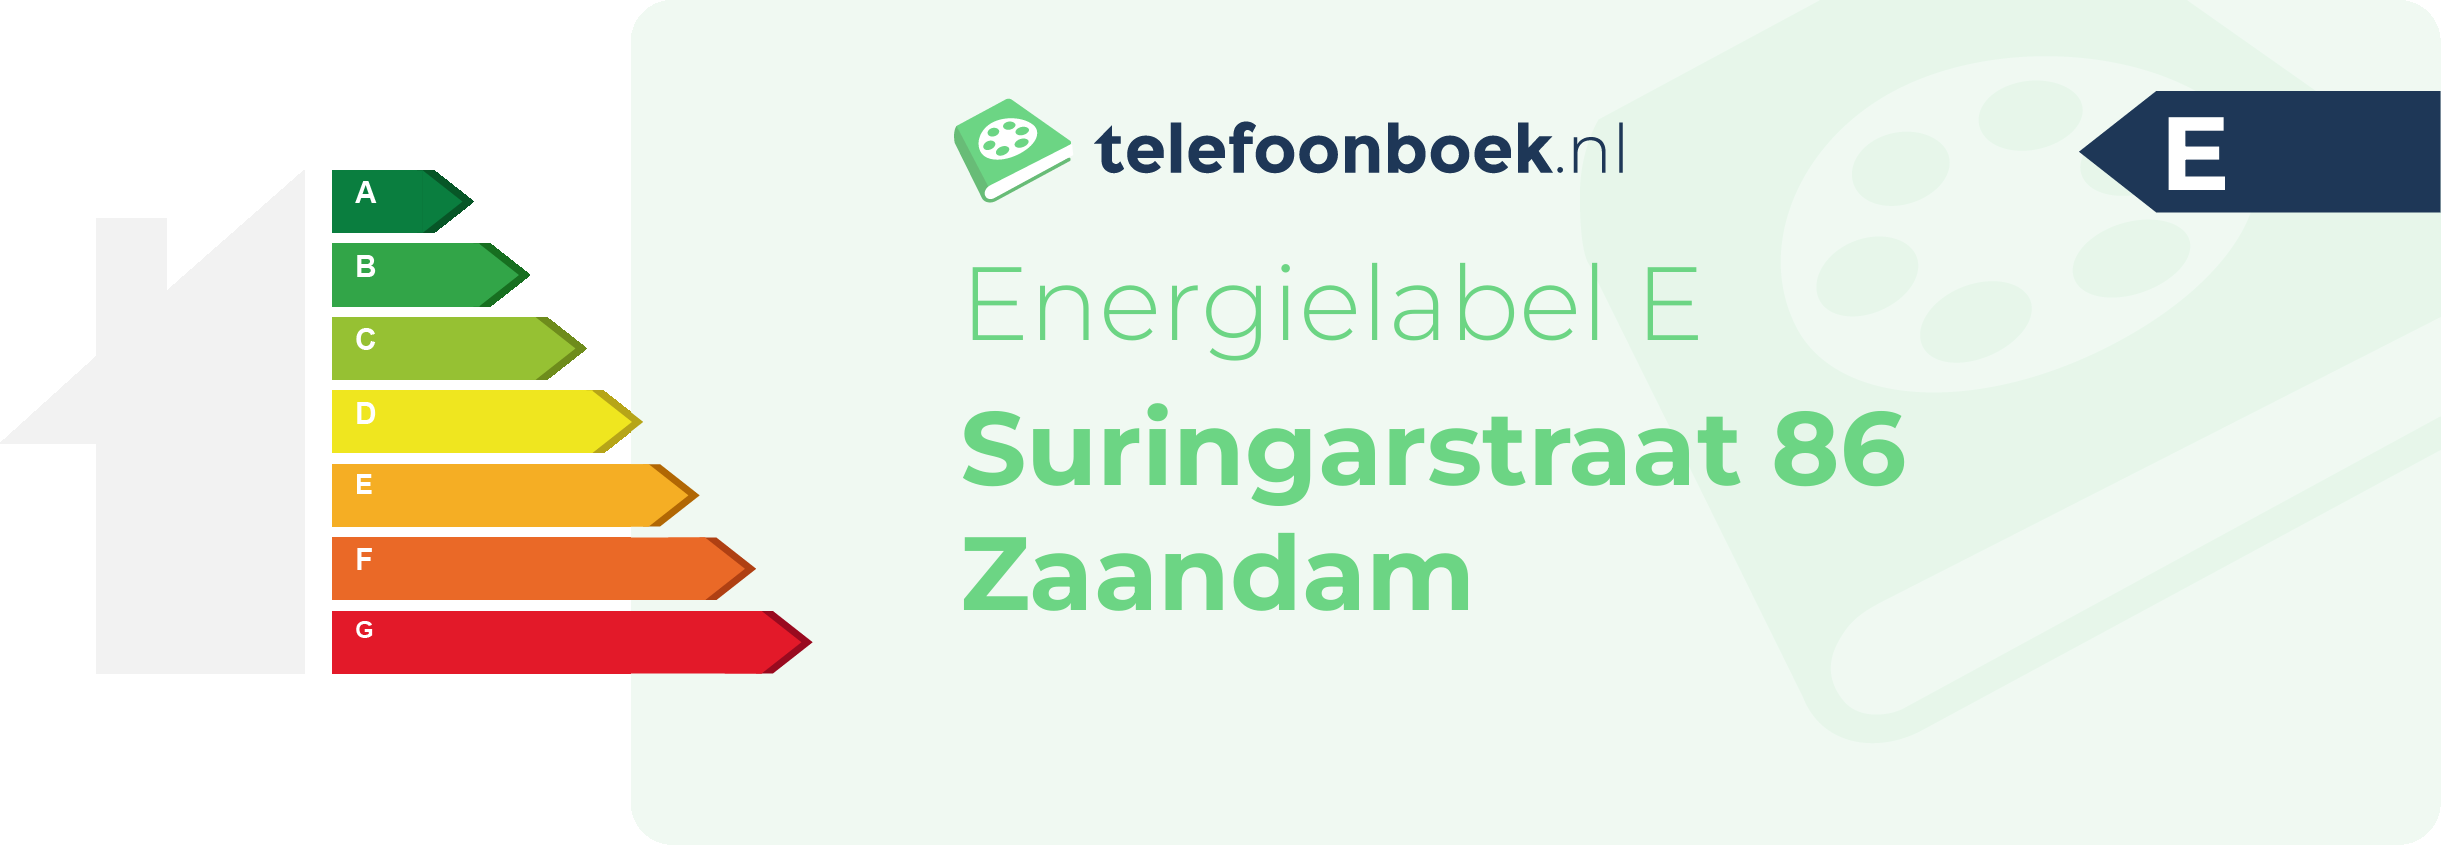 Energielabel Suringarstraat 86 Zaandam